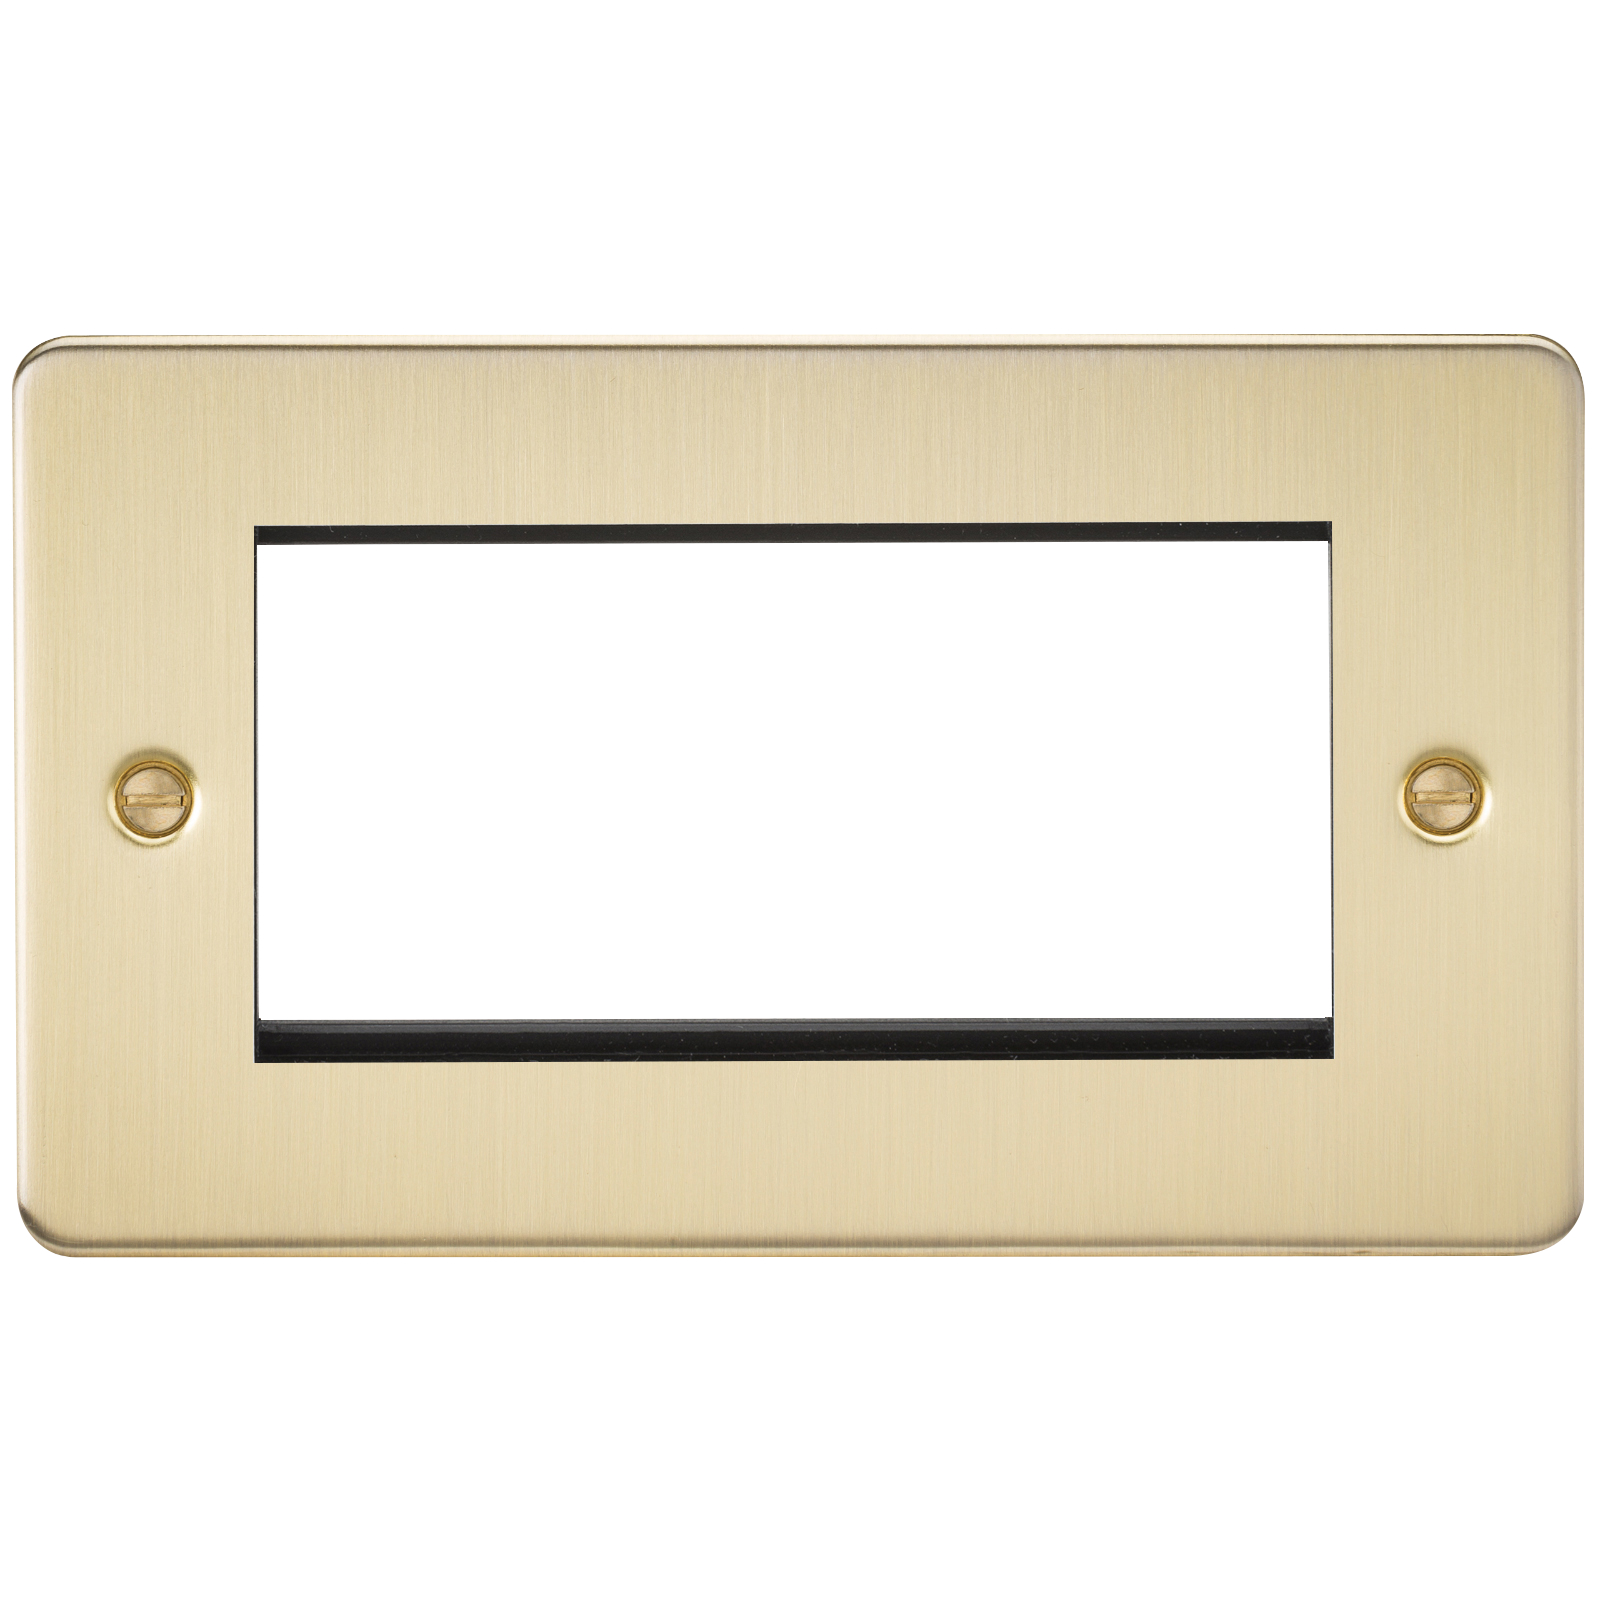 Flat Plate 4G Modular Faceplate - Brushed Brass - FP4GBB 